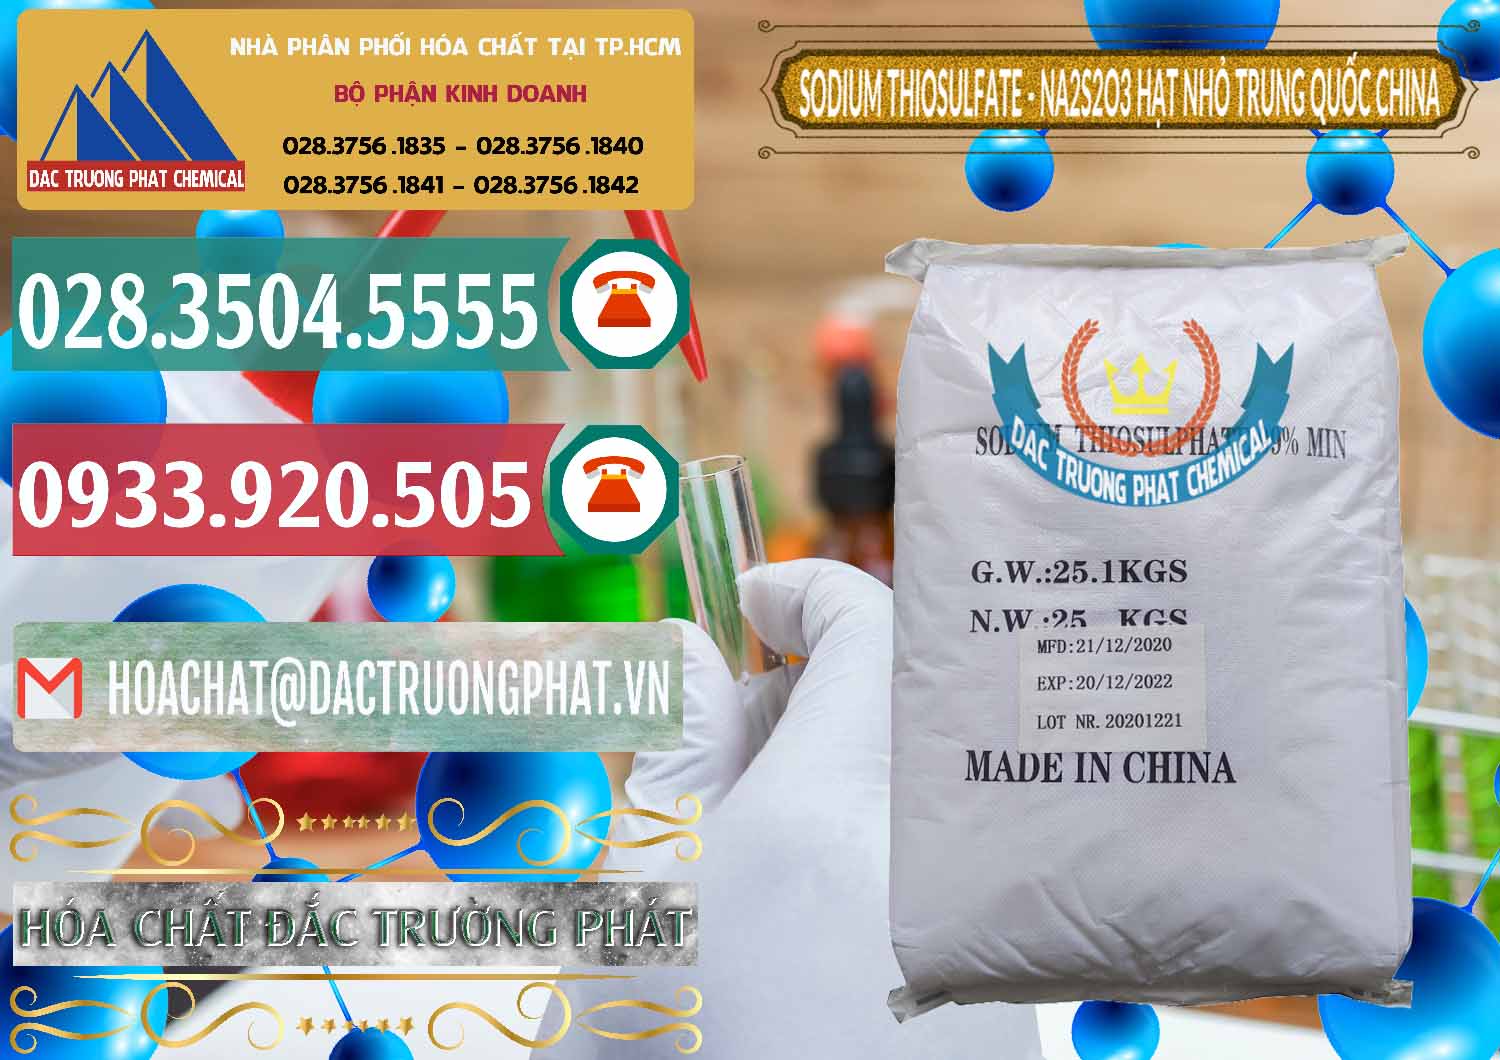 Cty chuyên bán & cung cấp Sodium Thiosulfate - NA2S2O3 Hạt Nhỏ Trung Quốc China - 0204 - Chuyên phân phối và cung cấp hóa chất tại TP.HCM - muabanhoachat.vn